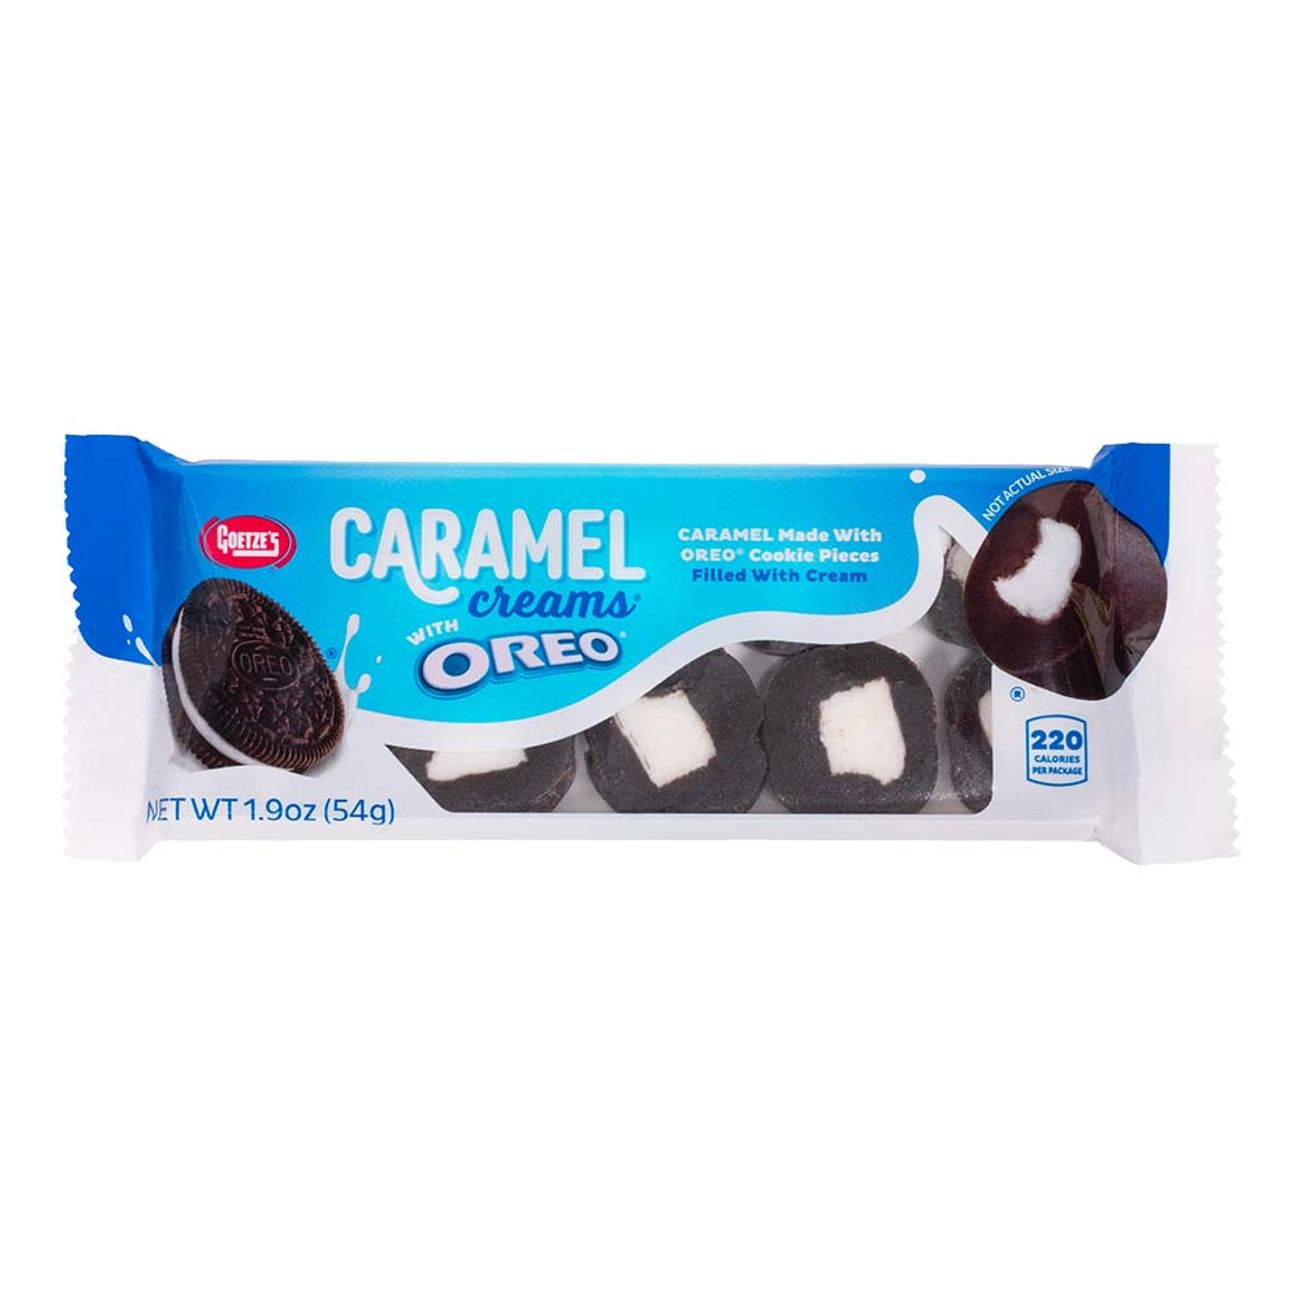 oreo-caramel-creams-95098-1